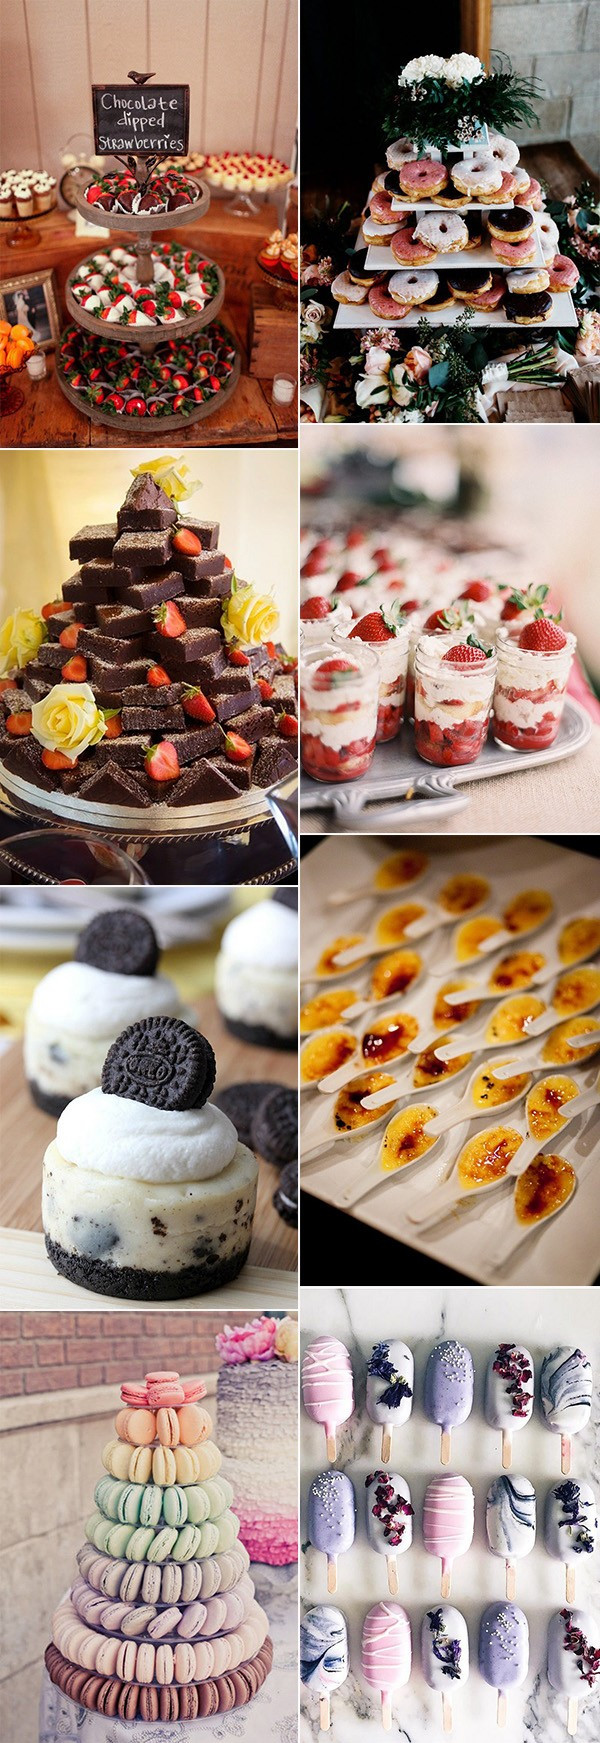 Unique Wedding Desserts
 15 Sweet Wedding Dessert Ideas Your Guests Will Love